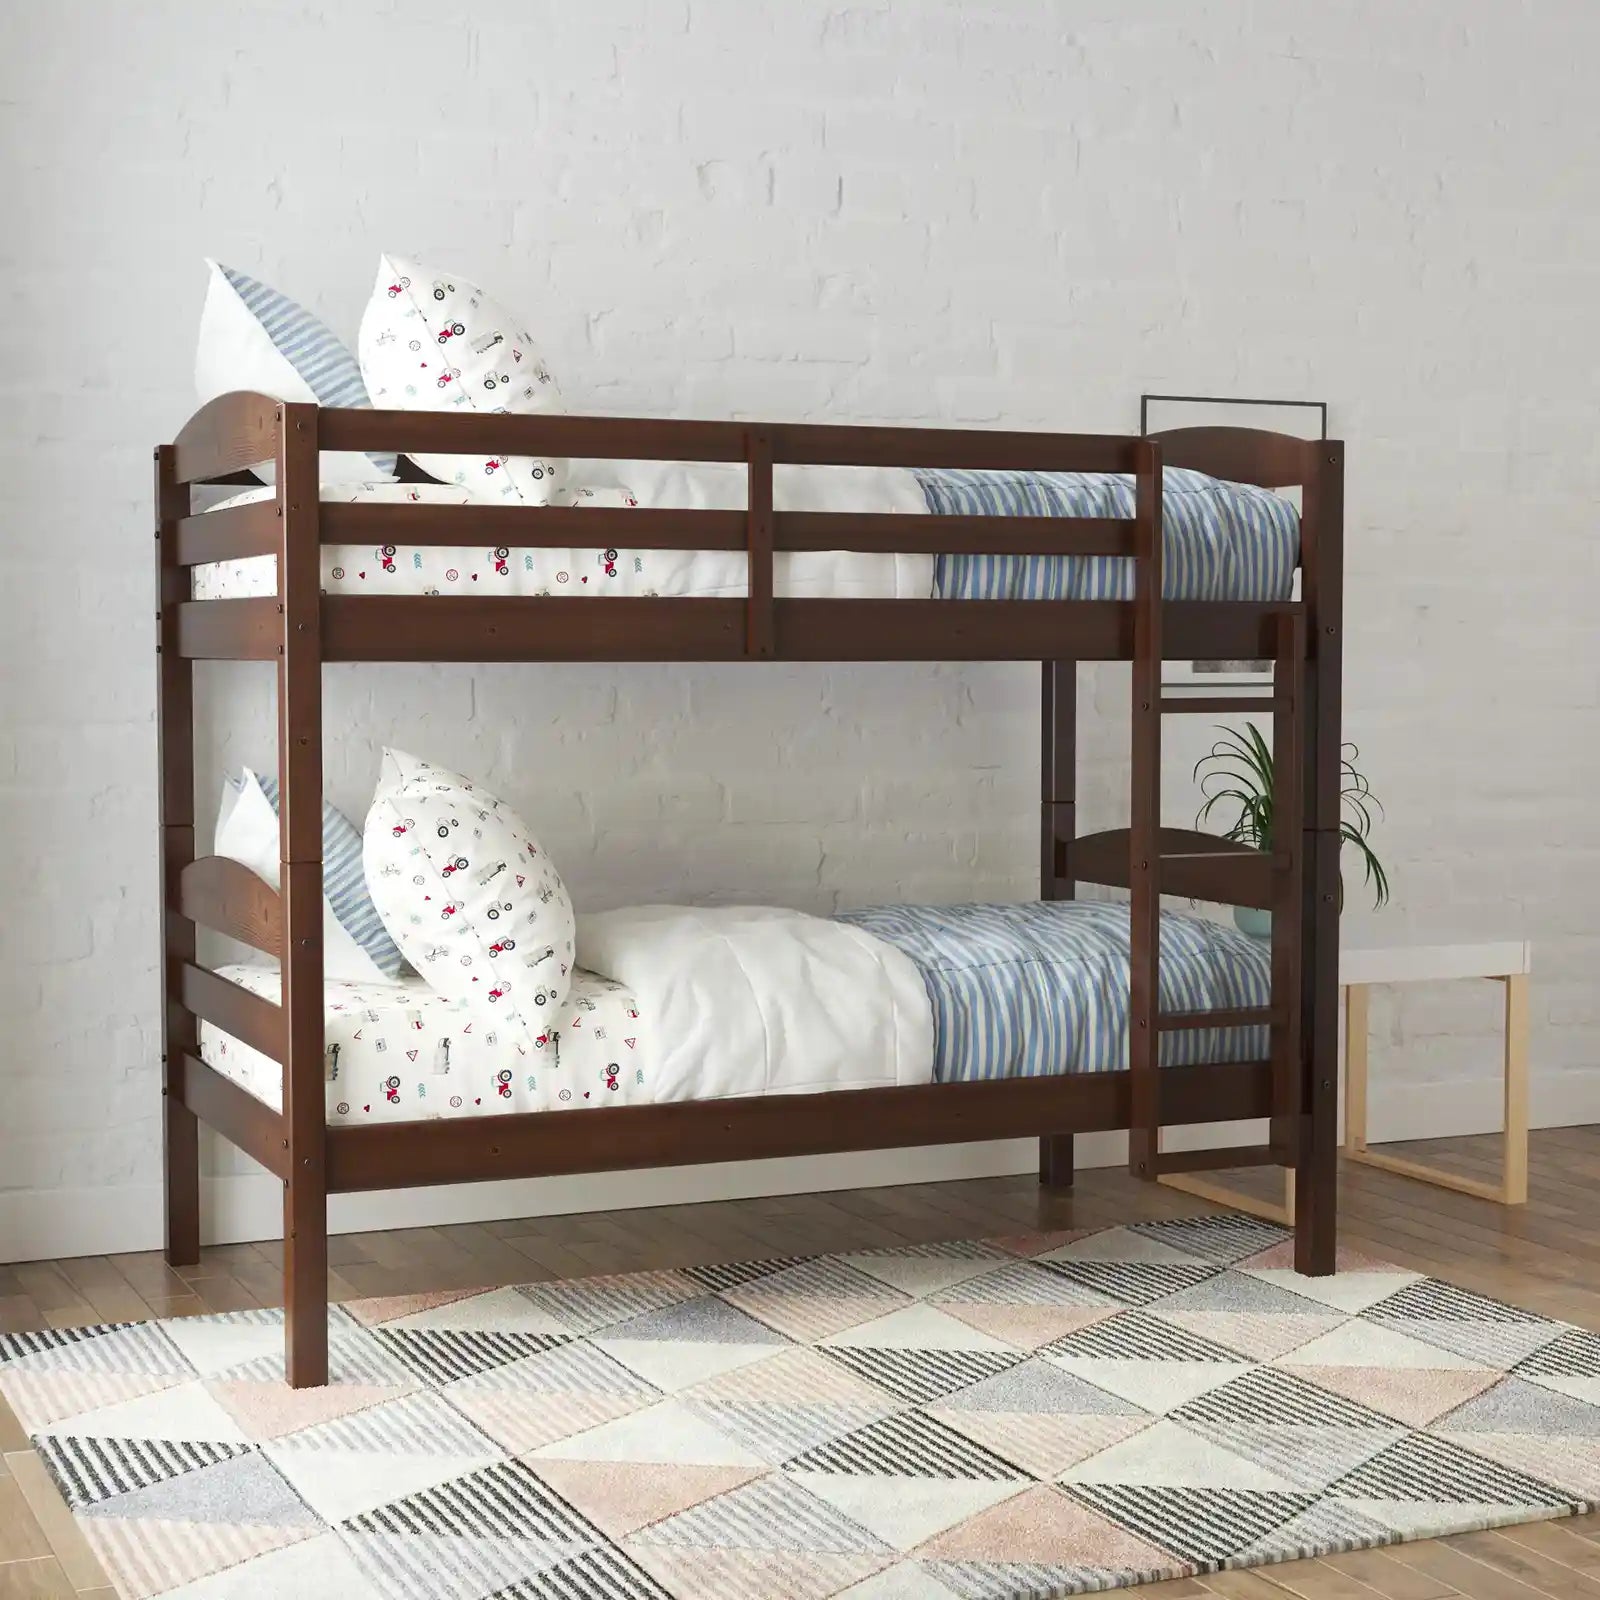 Litera de madera con dos camas individuales y dos camas individuales